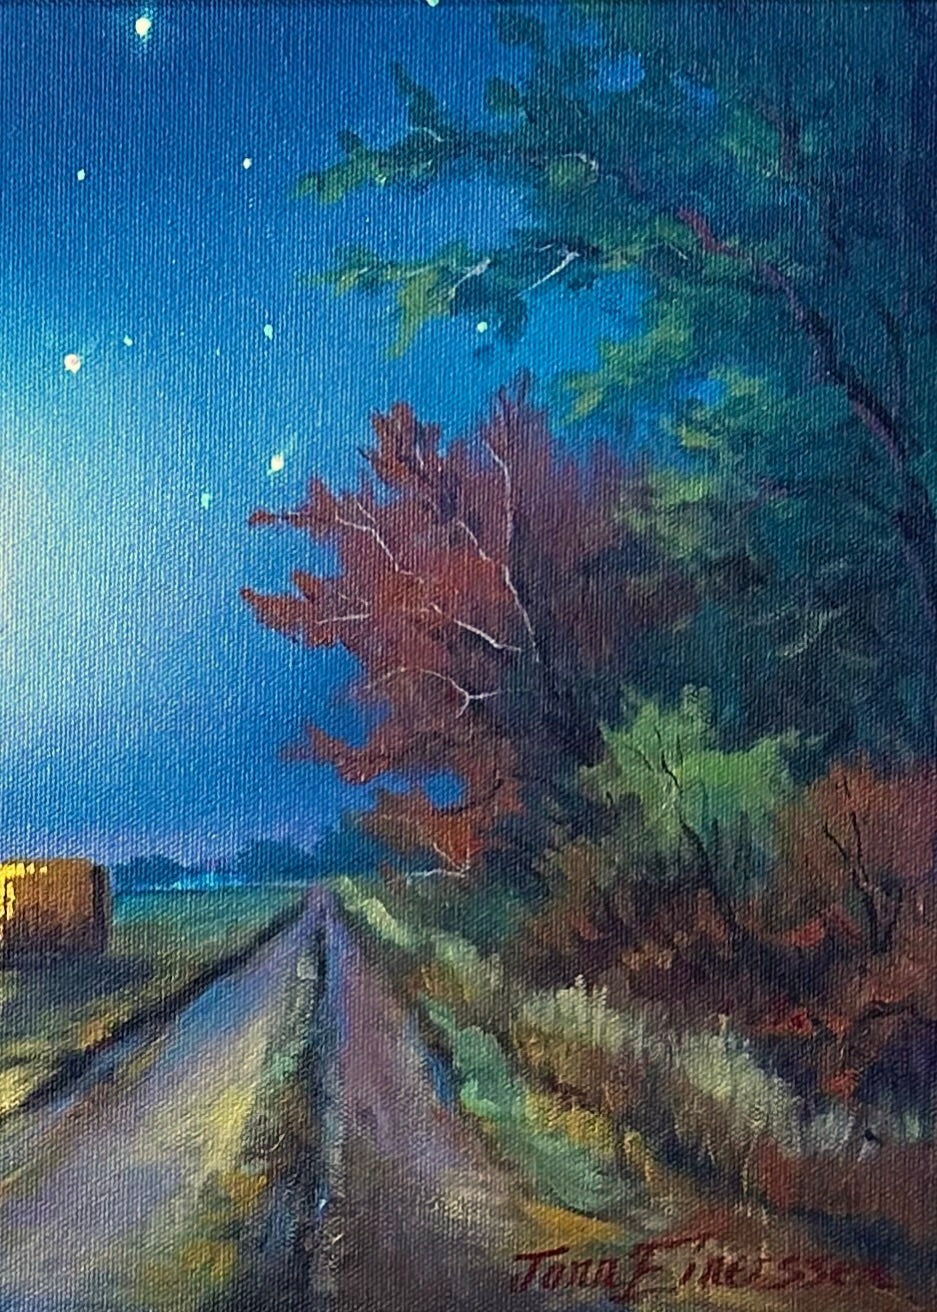 Moonlit Lane